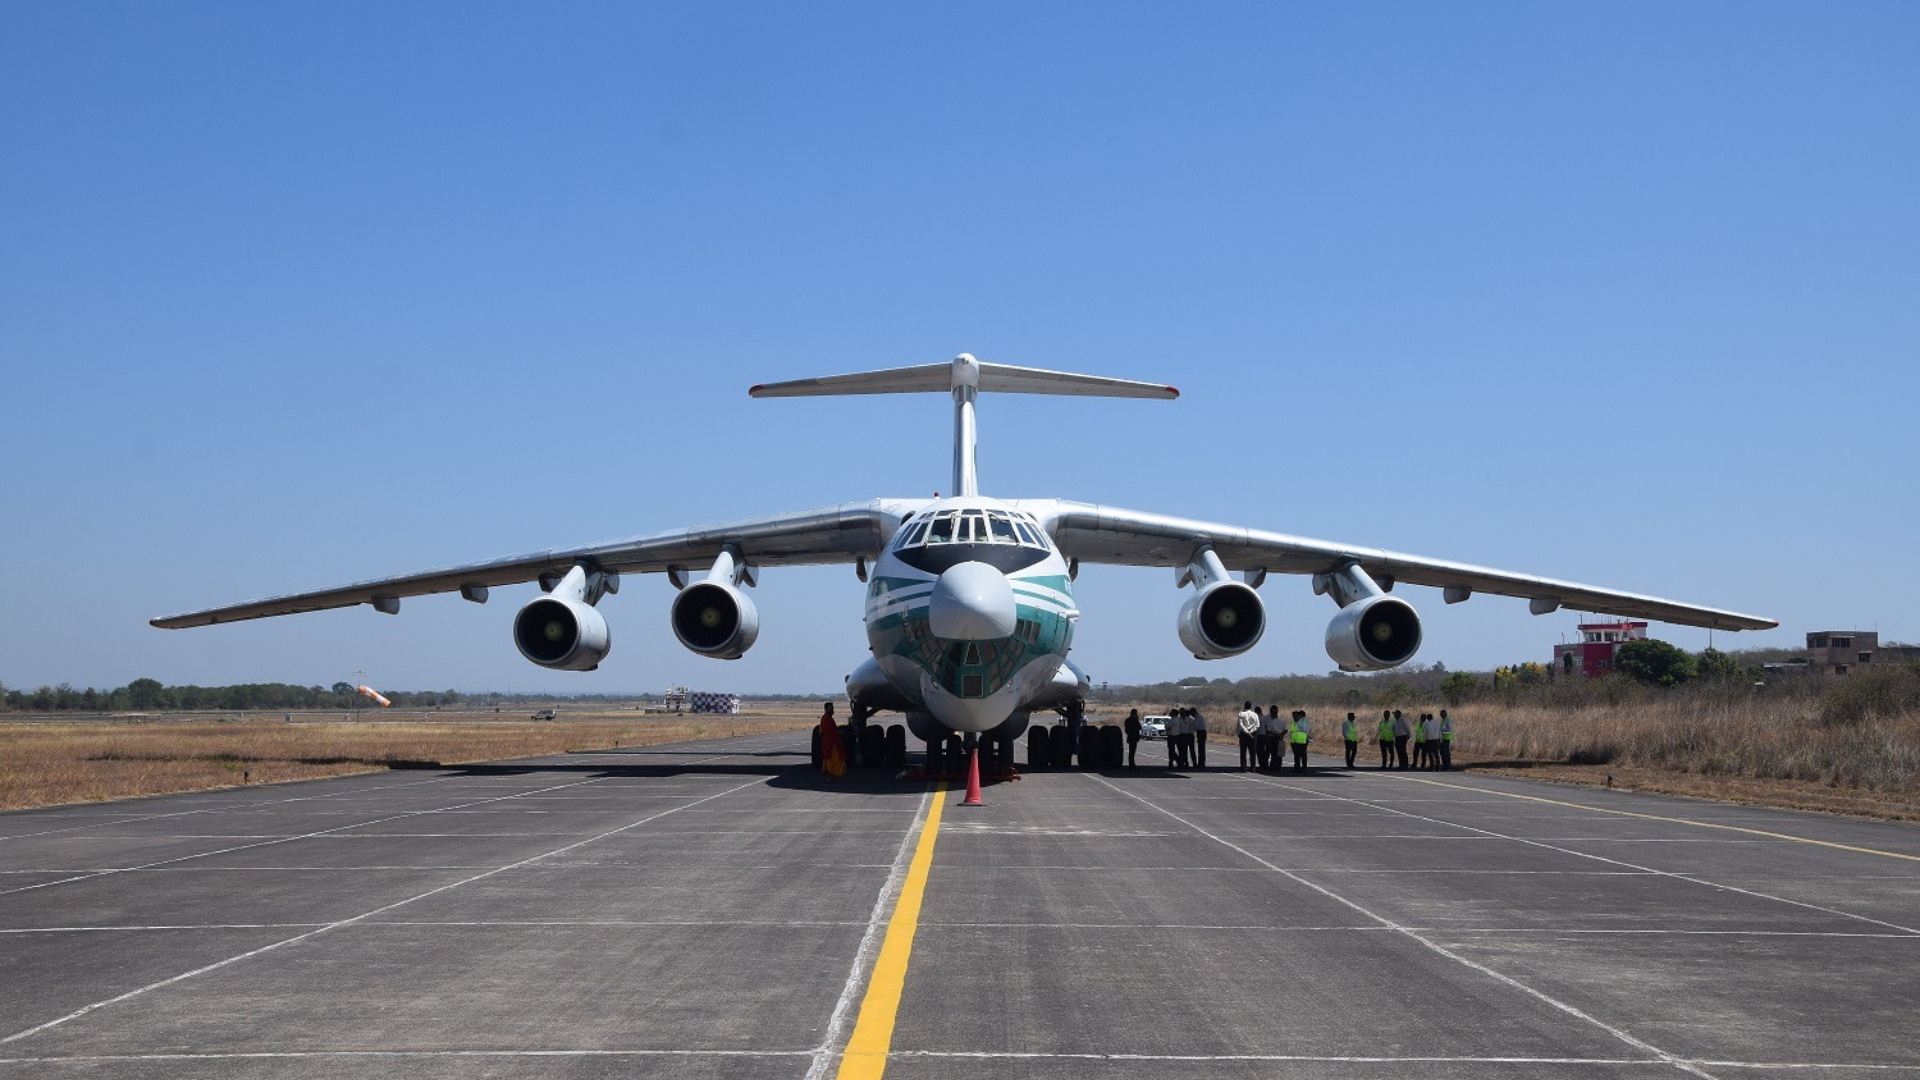 Հնդկաստանը դեպի Հայաստան օդային միջանցք է ստեղծում՝ ռազմավարական արտահանումների համար